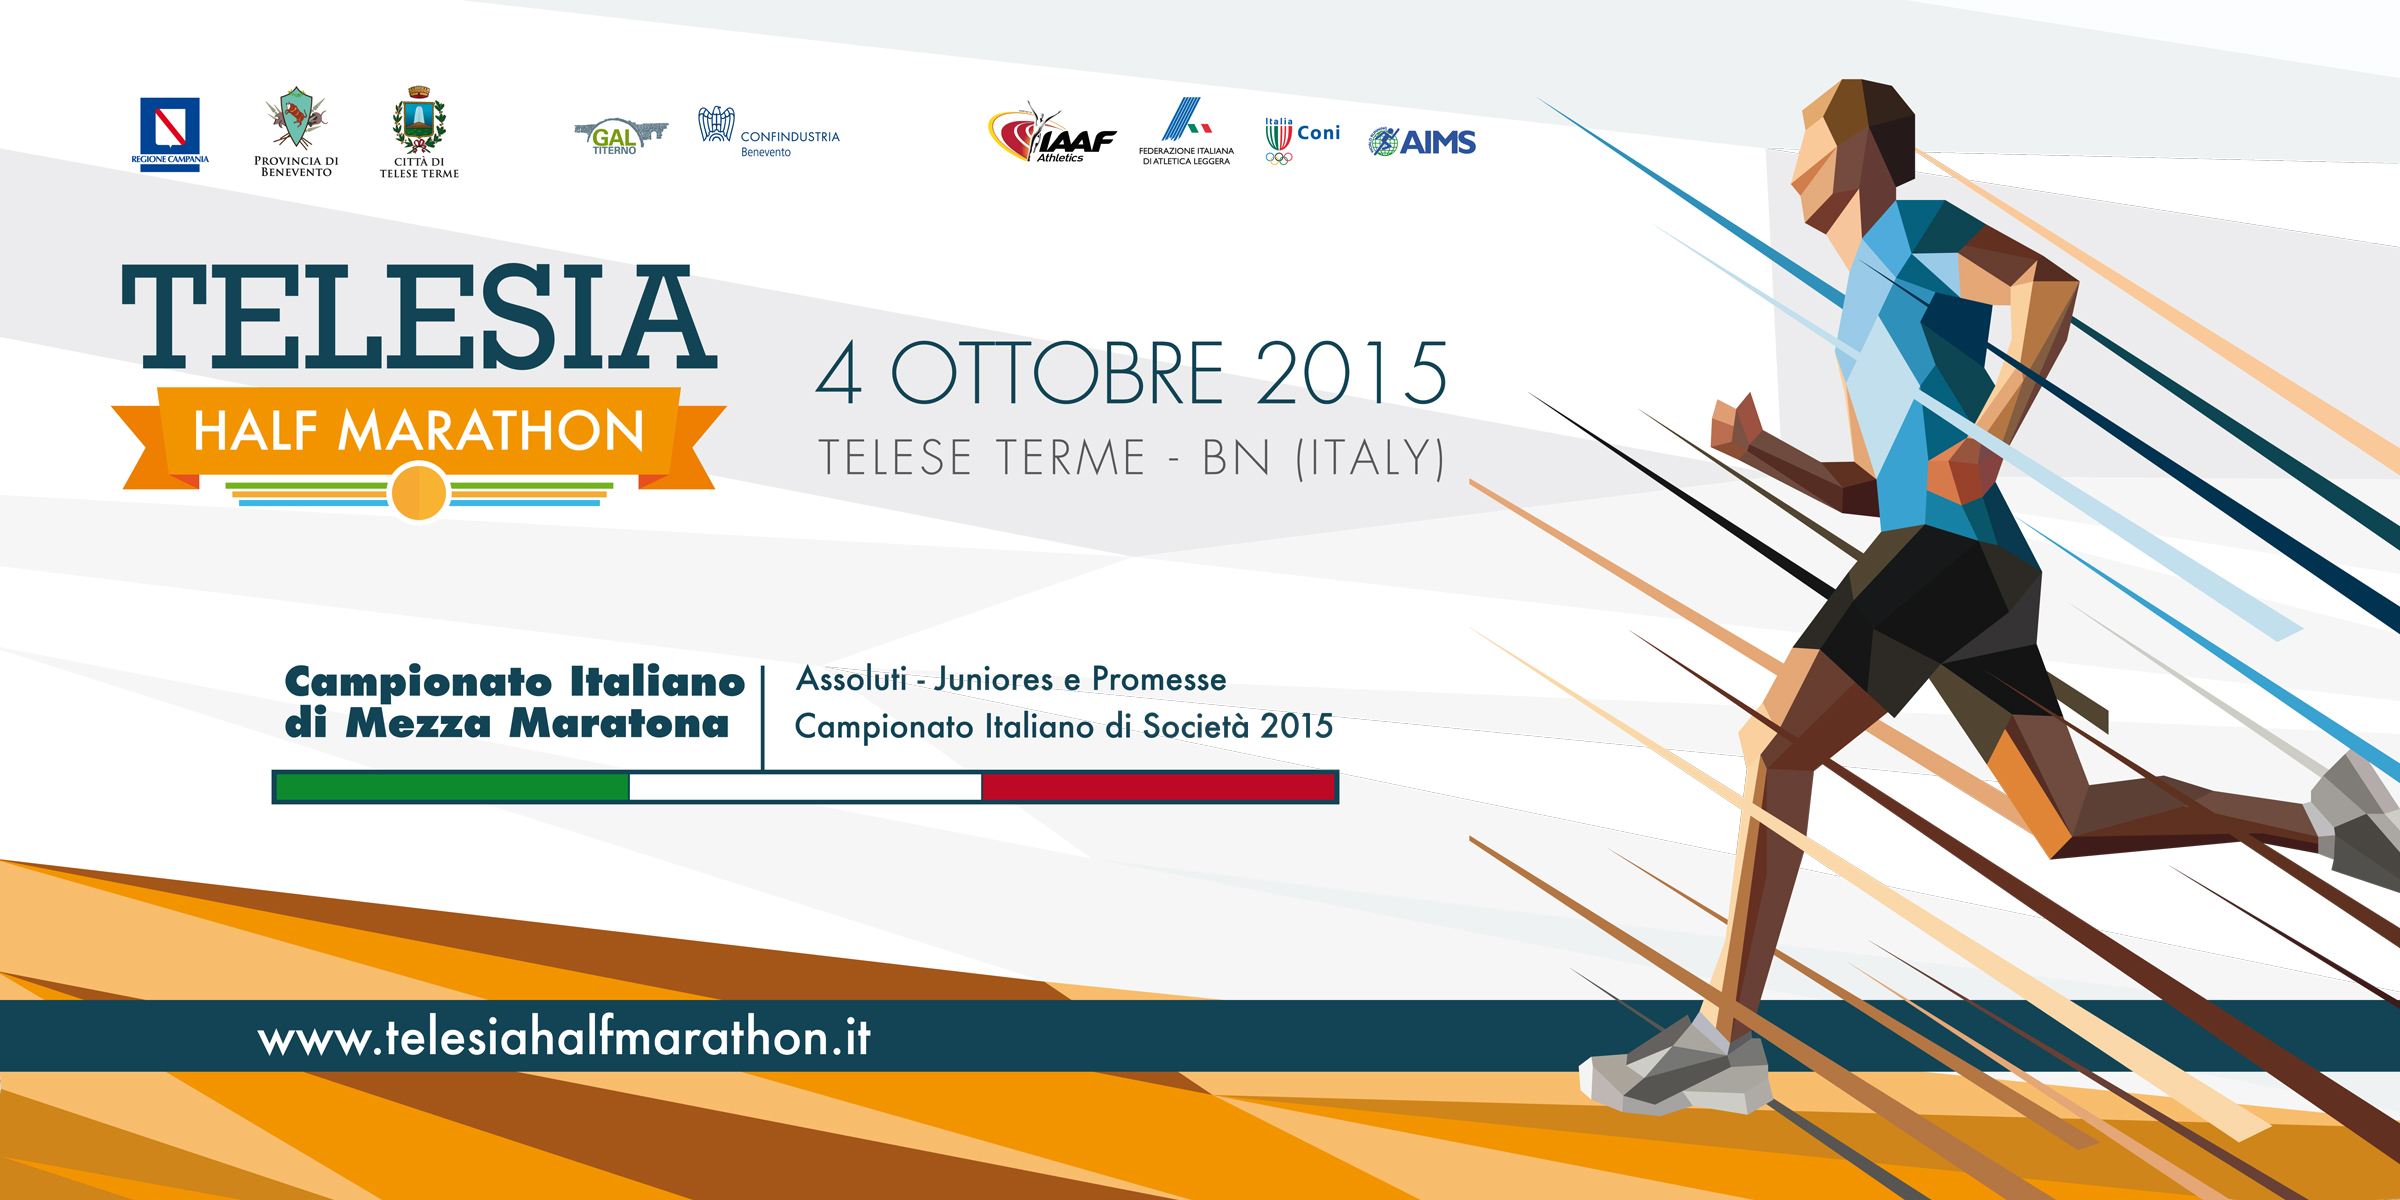 Ufficializzata la data del Campionato Italiano 2015 di Mezza Maratona a Telese Terme